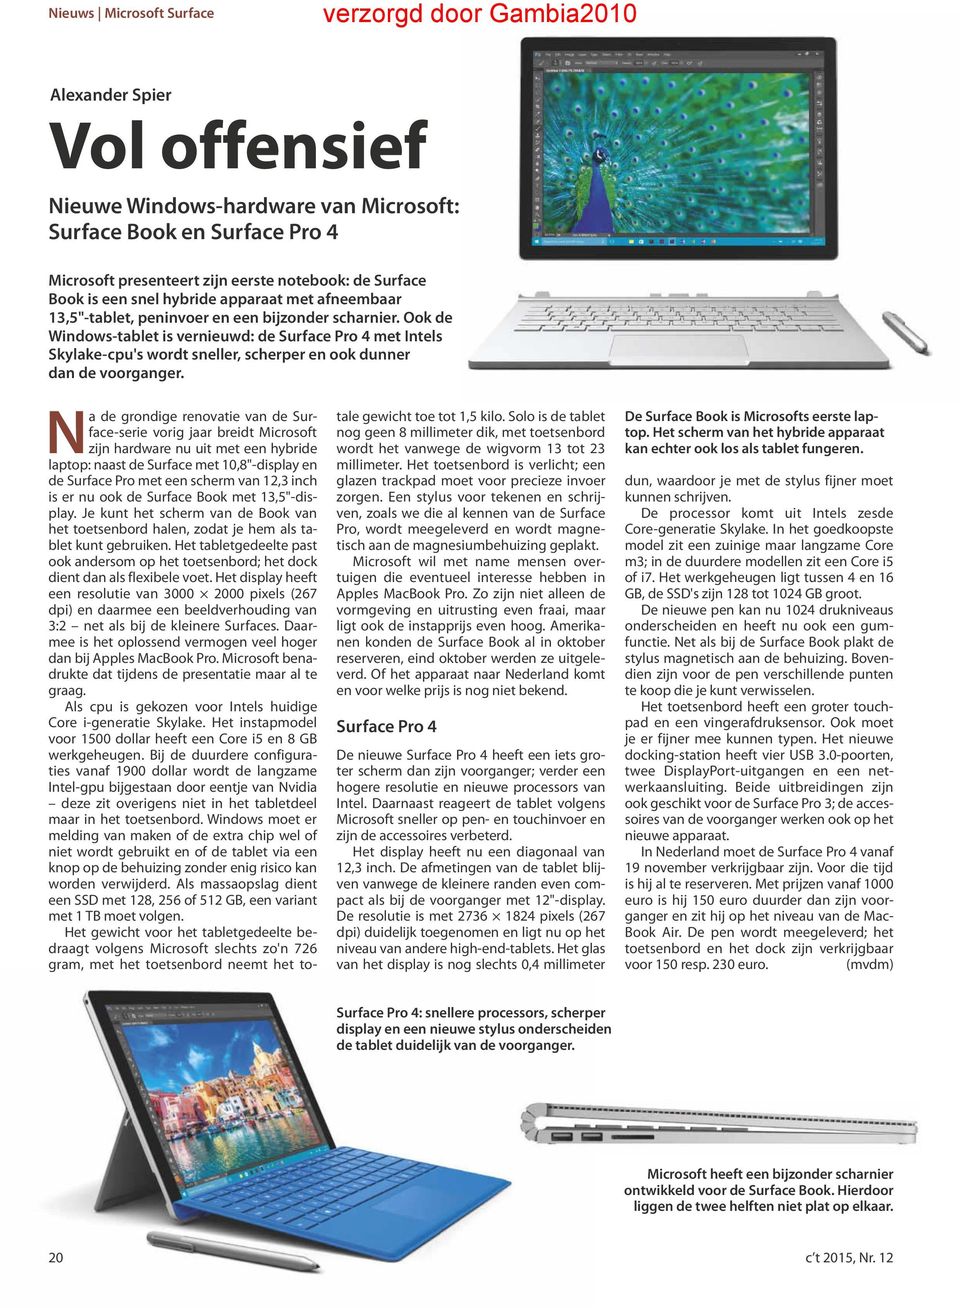 Ook de Windows-tablet is vernieuwd: de Surface Pro 4 met Intels Skylake-cpu's wordt sneller, scherper en ook dunner dan de voorganger.